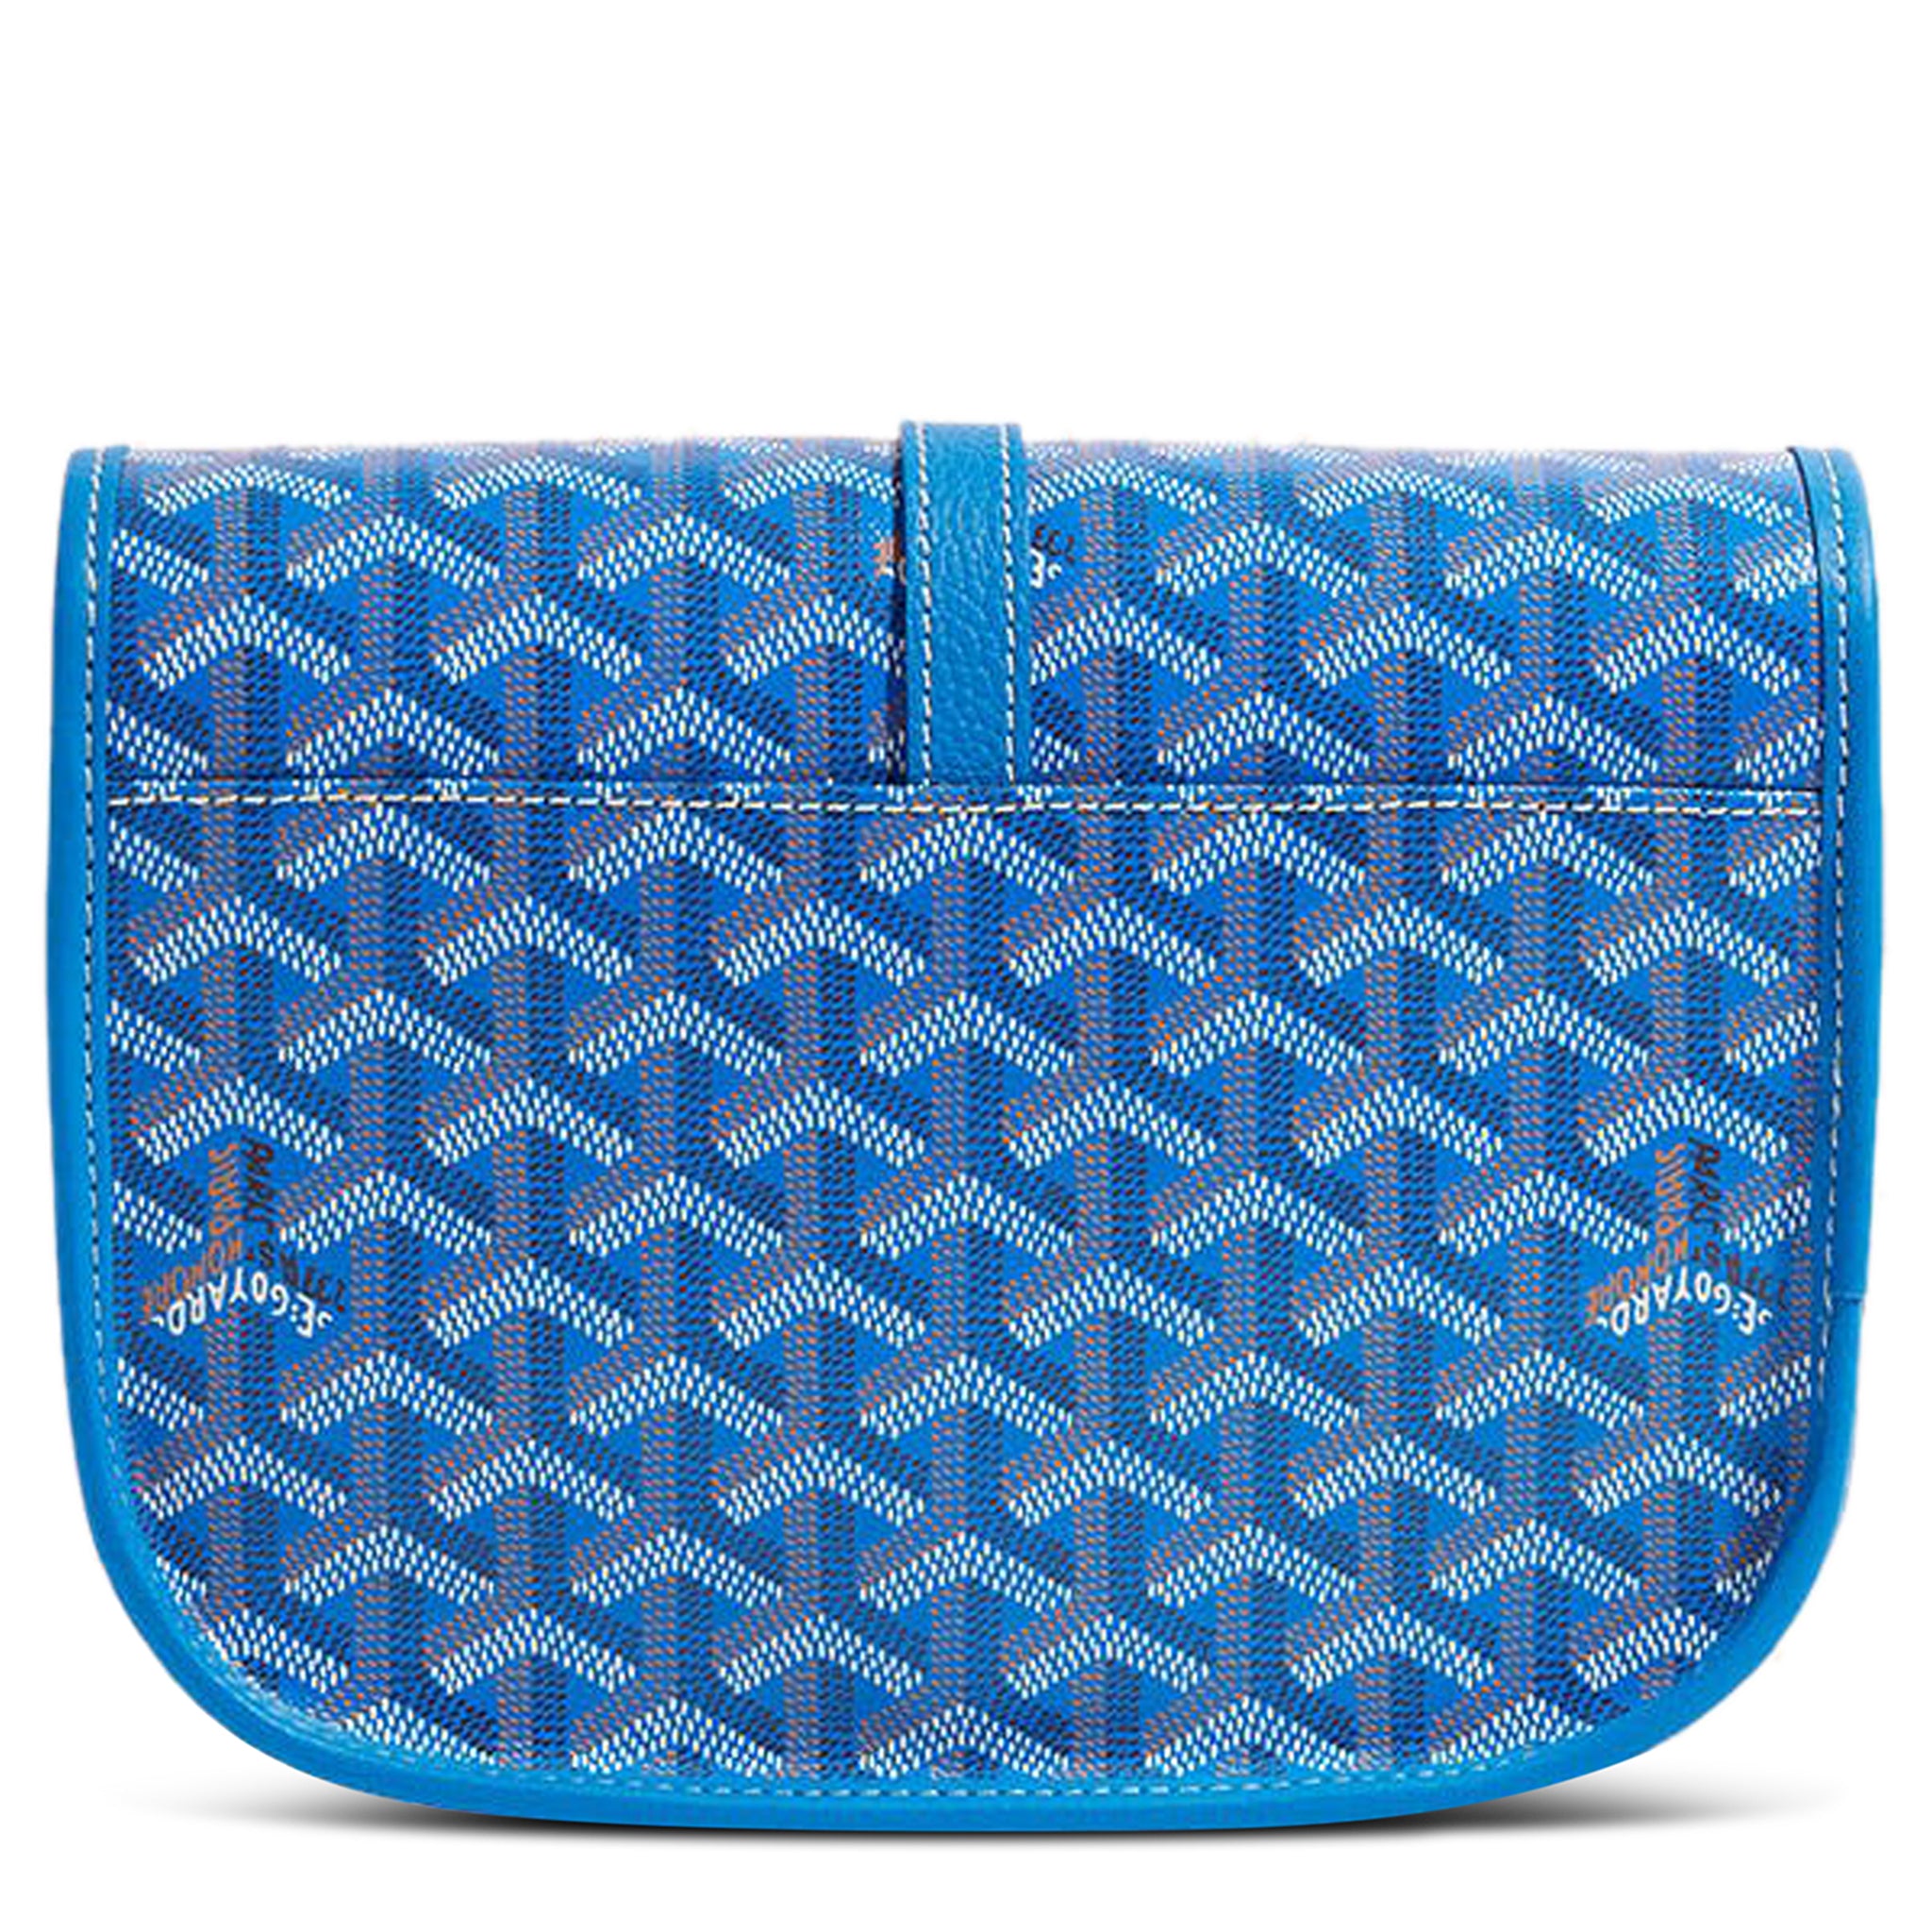 Image of Goyard Goyardine Belvedere II Sky Blue PM Messenger Bag